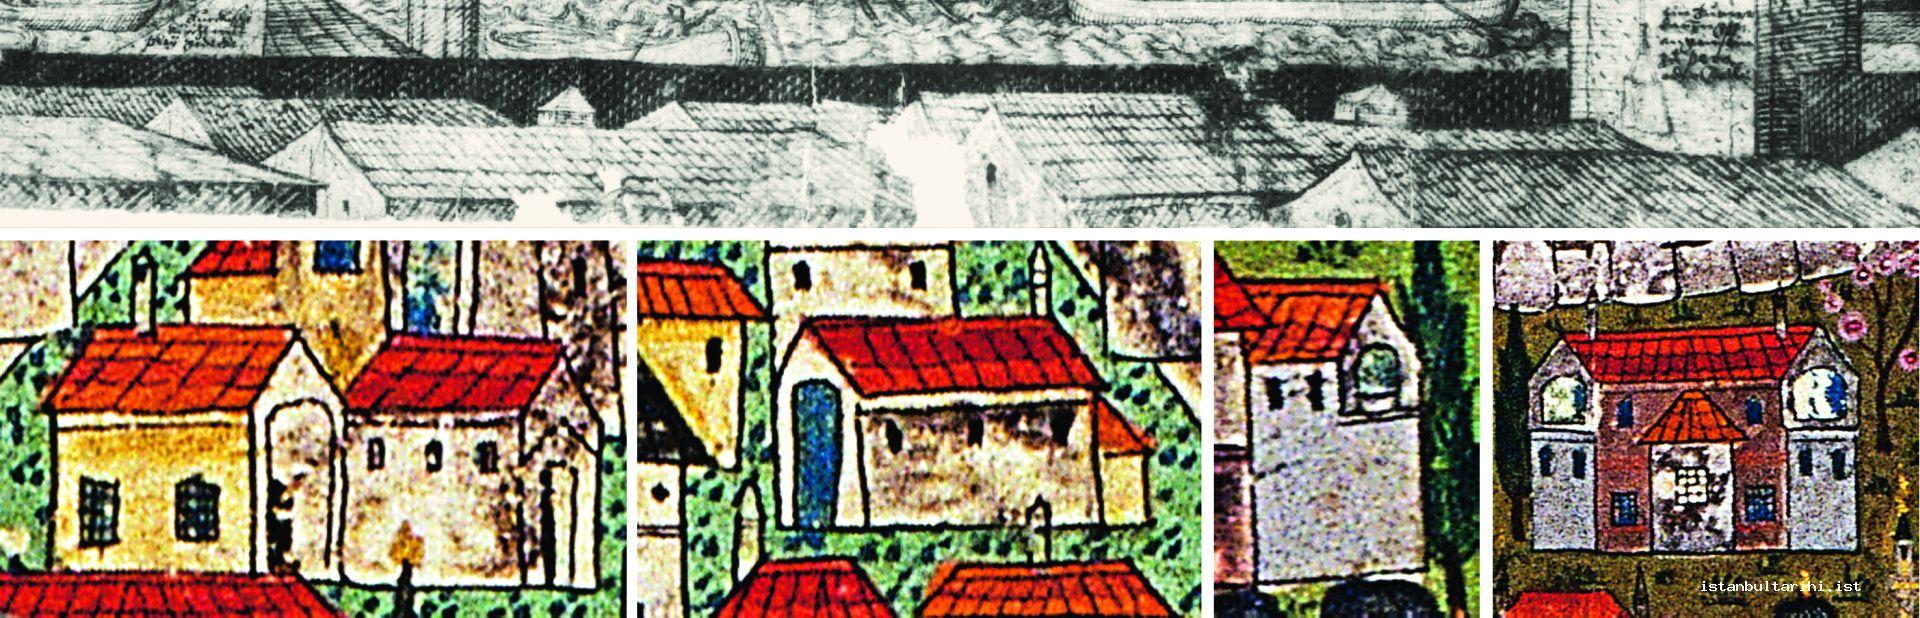 6- İstanbul'daki Mistra evi tipindeki muhtemel Kâfirî yapılar. (Lorichs’den (üstte) ve Matrakçı’dan detay)